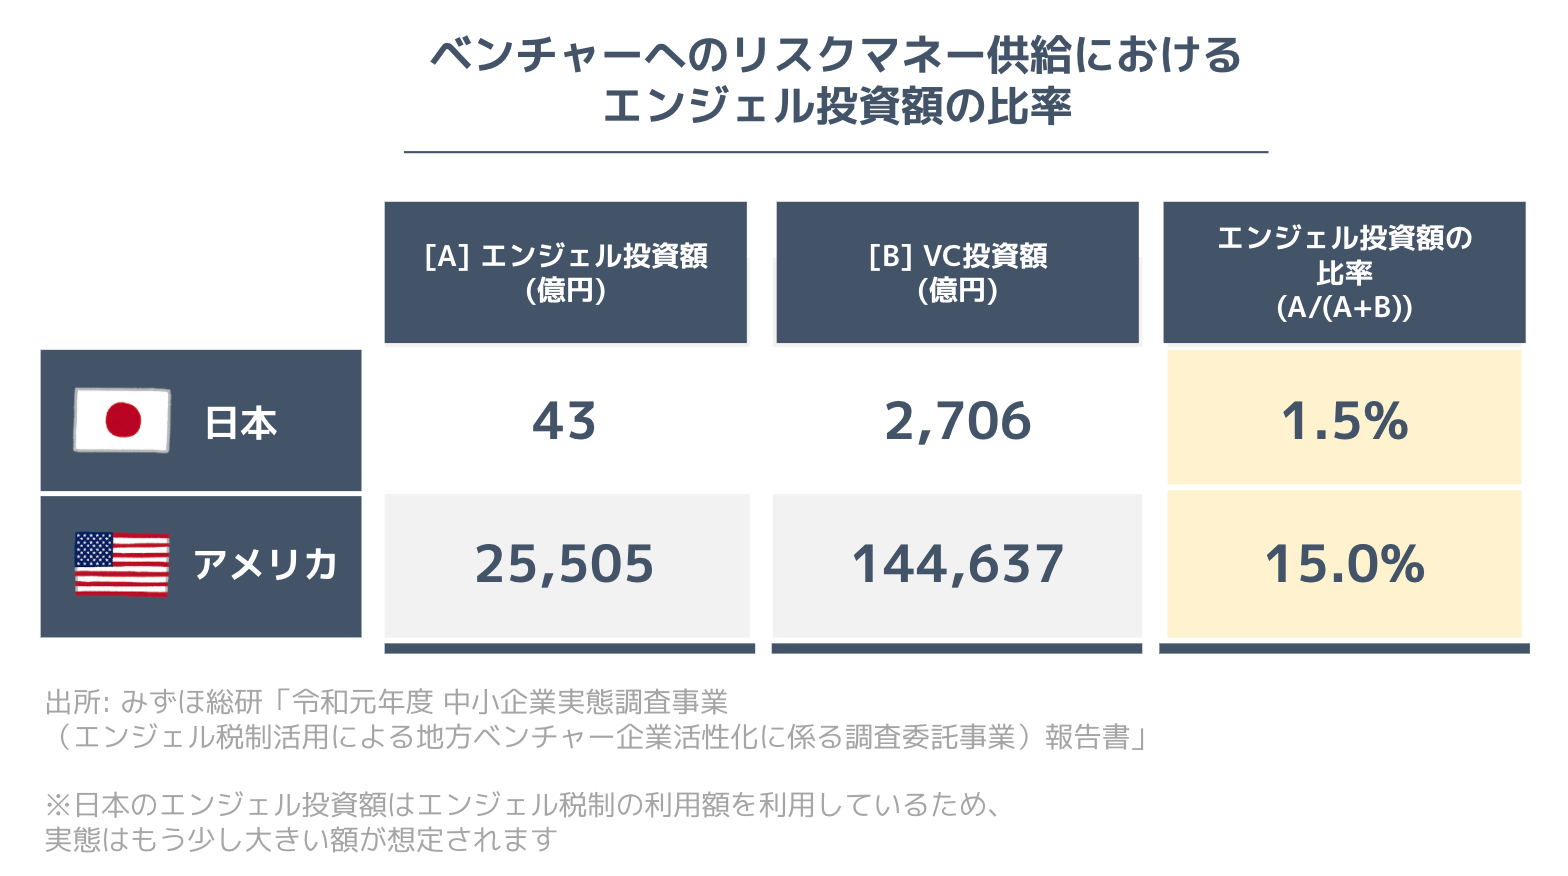 米国のリスクマネー供給におけるエンジェル投資は15%だが、日本ではエンジェル投資はわずか1.5%